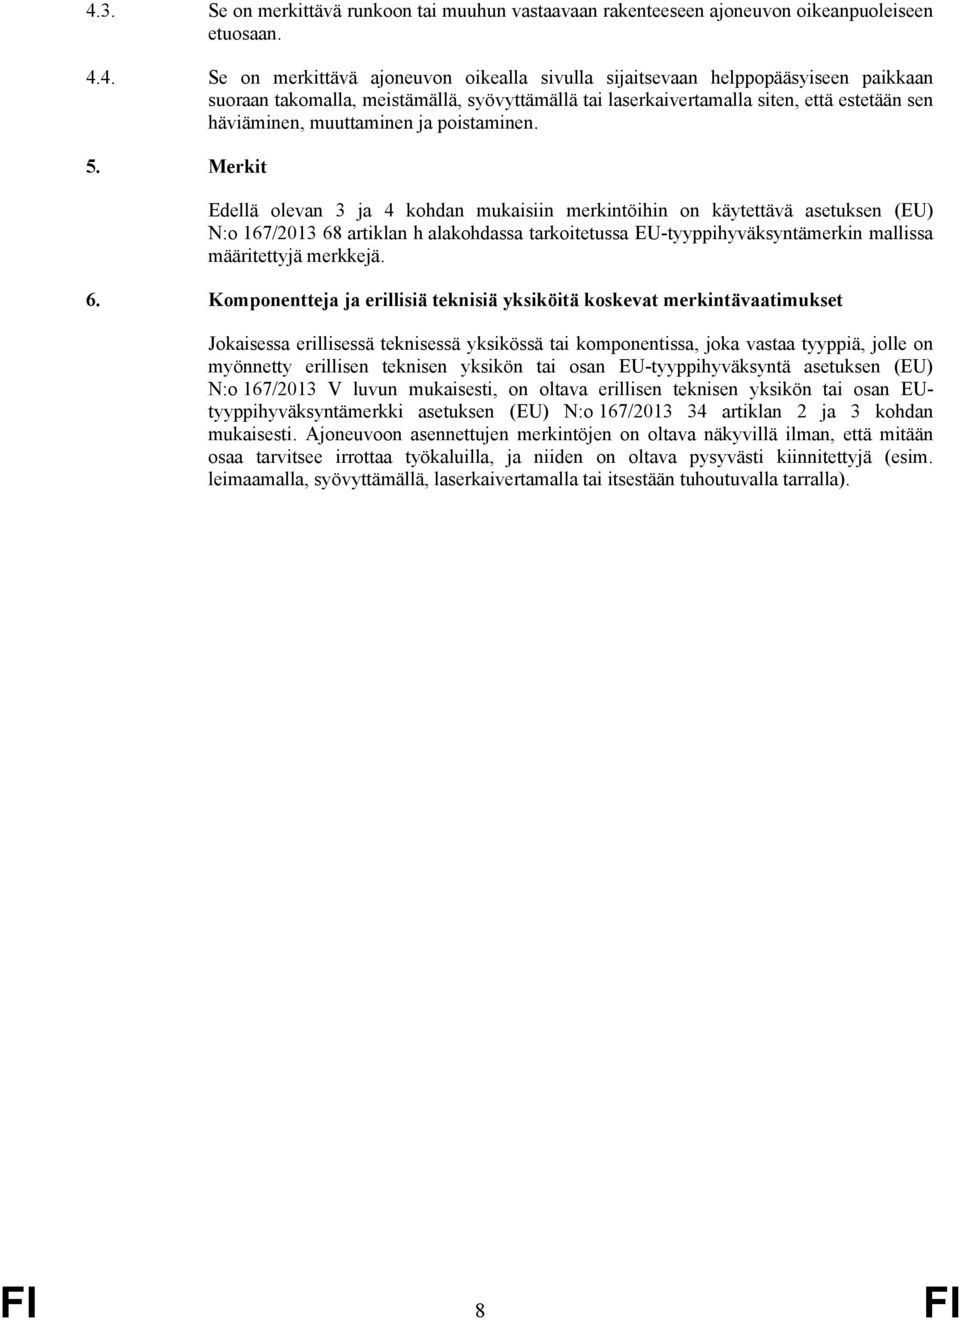 Merkit Edellä olevan 3 ja 4 kohdan mukaisiin merkintöihin on käytettävä asetuksen (EU) N:o 167/2013 68